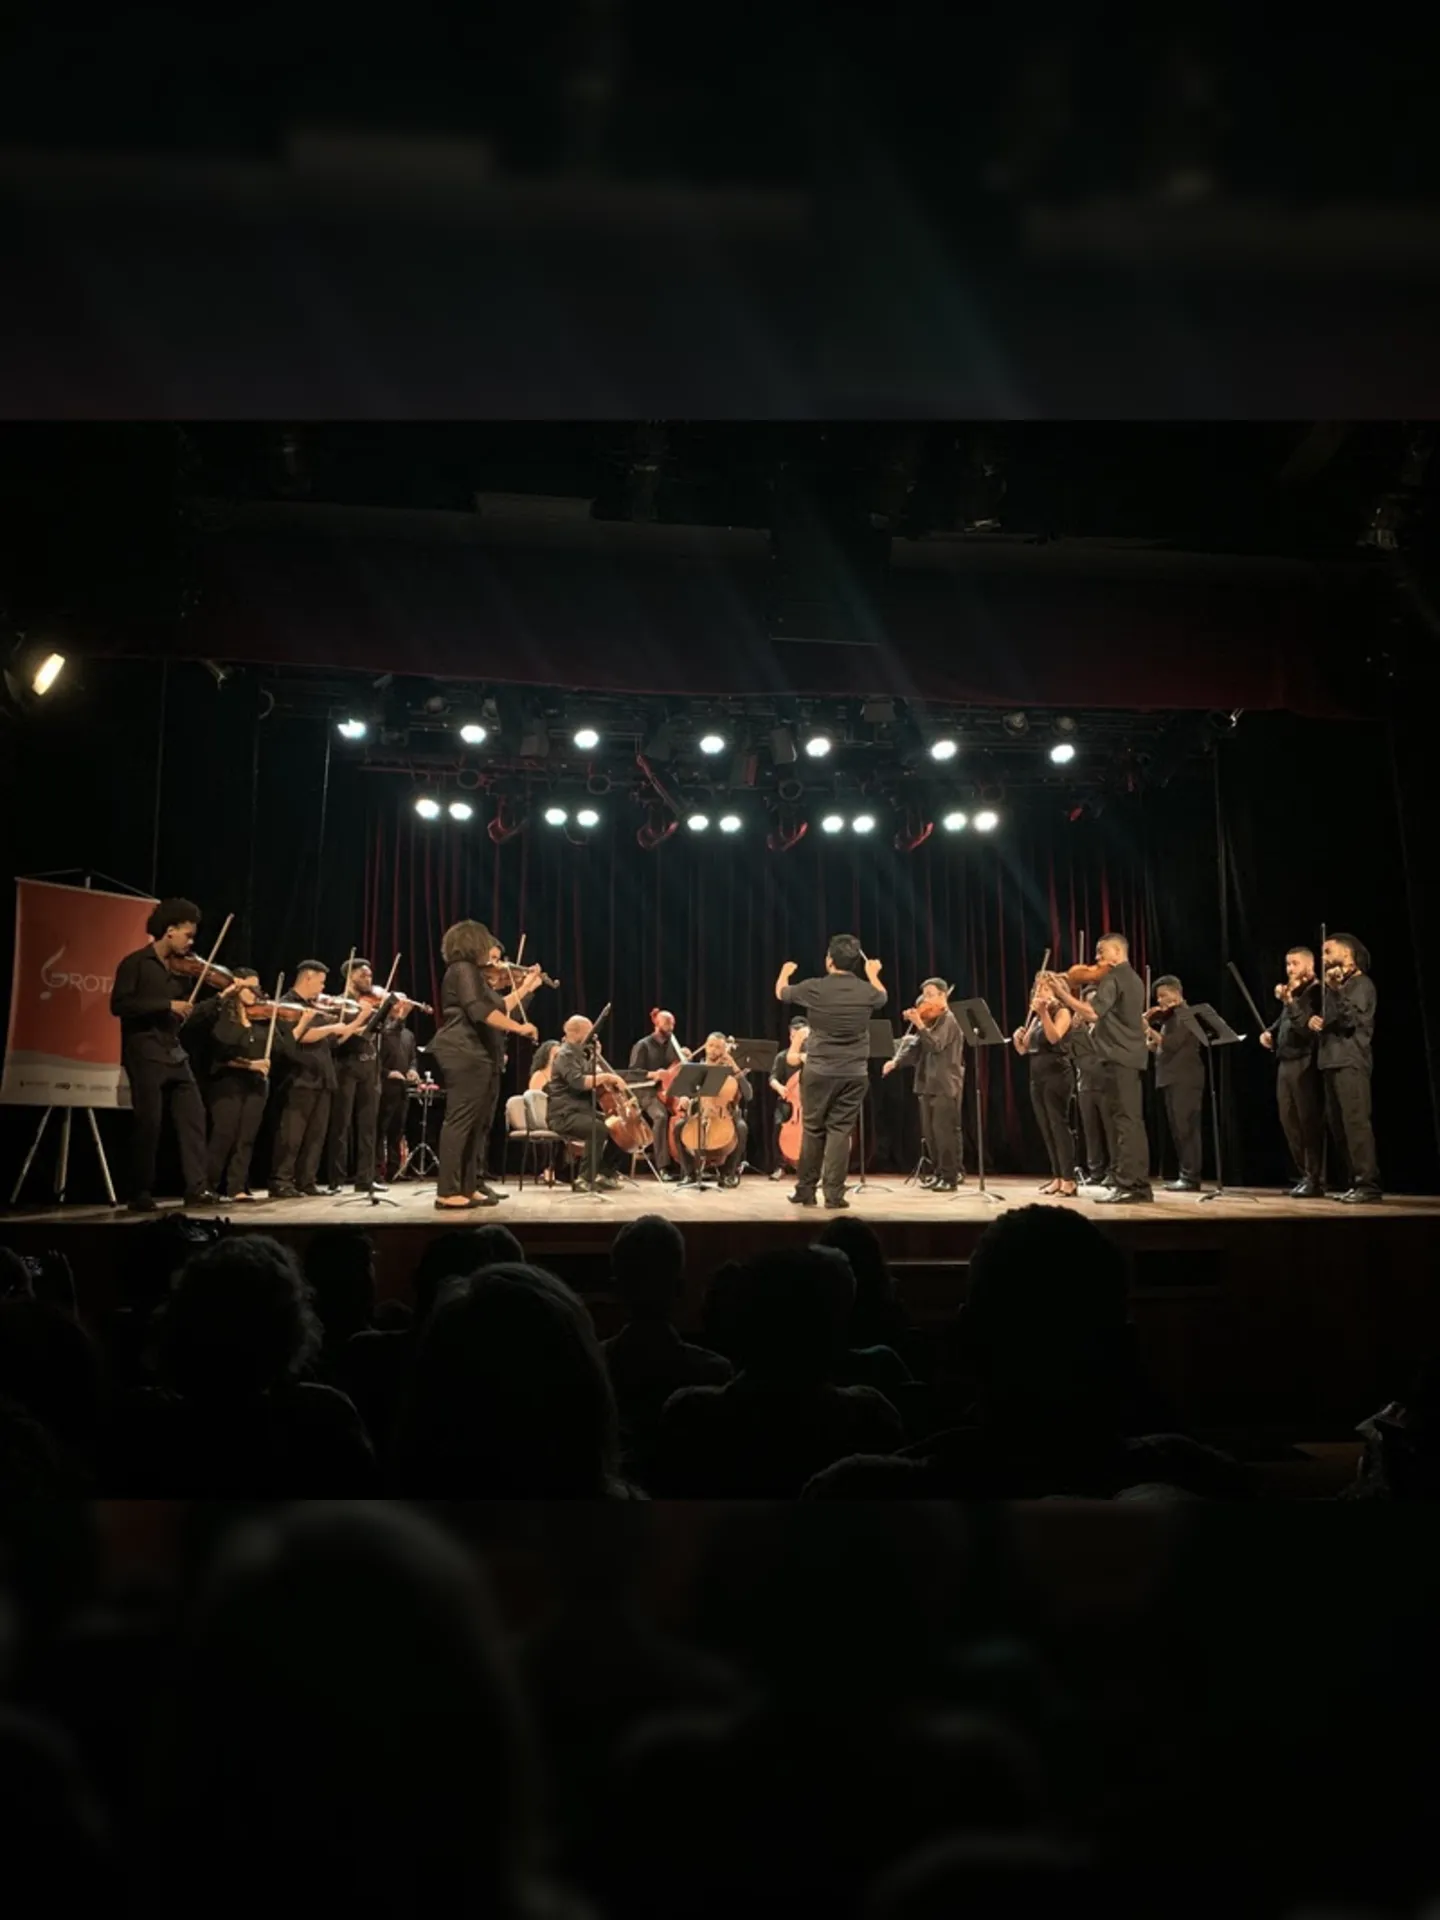 Orquestra reúne 23 músicos profissionais formados na comunidade